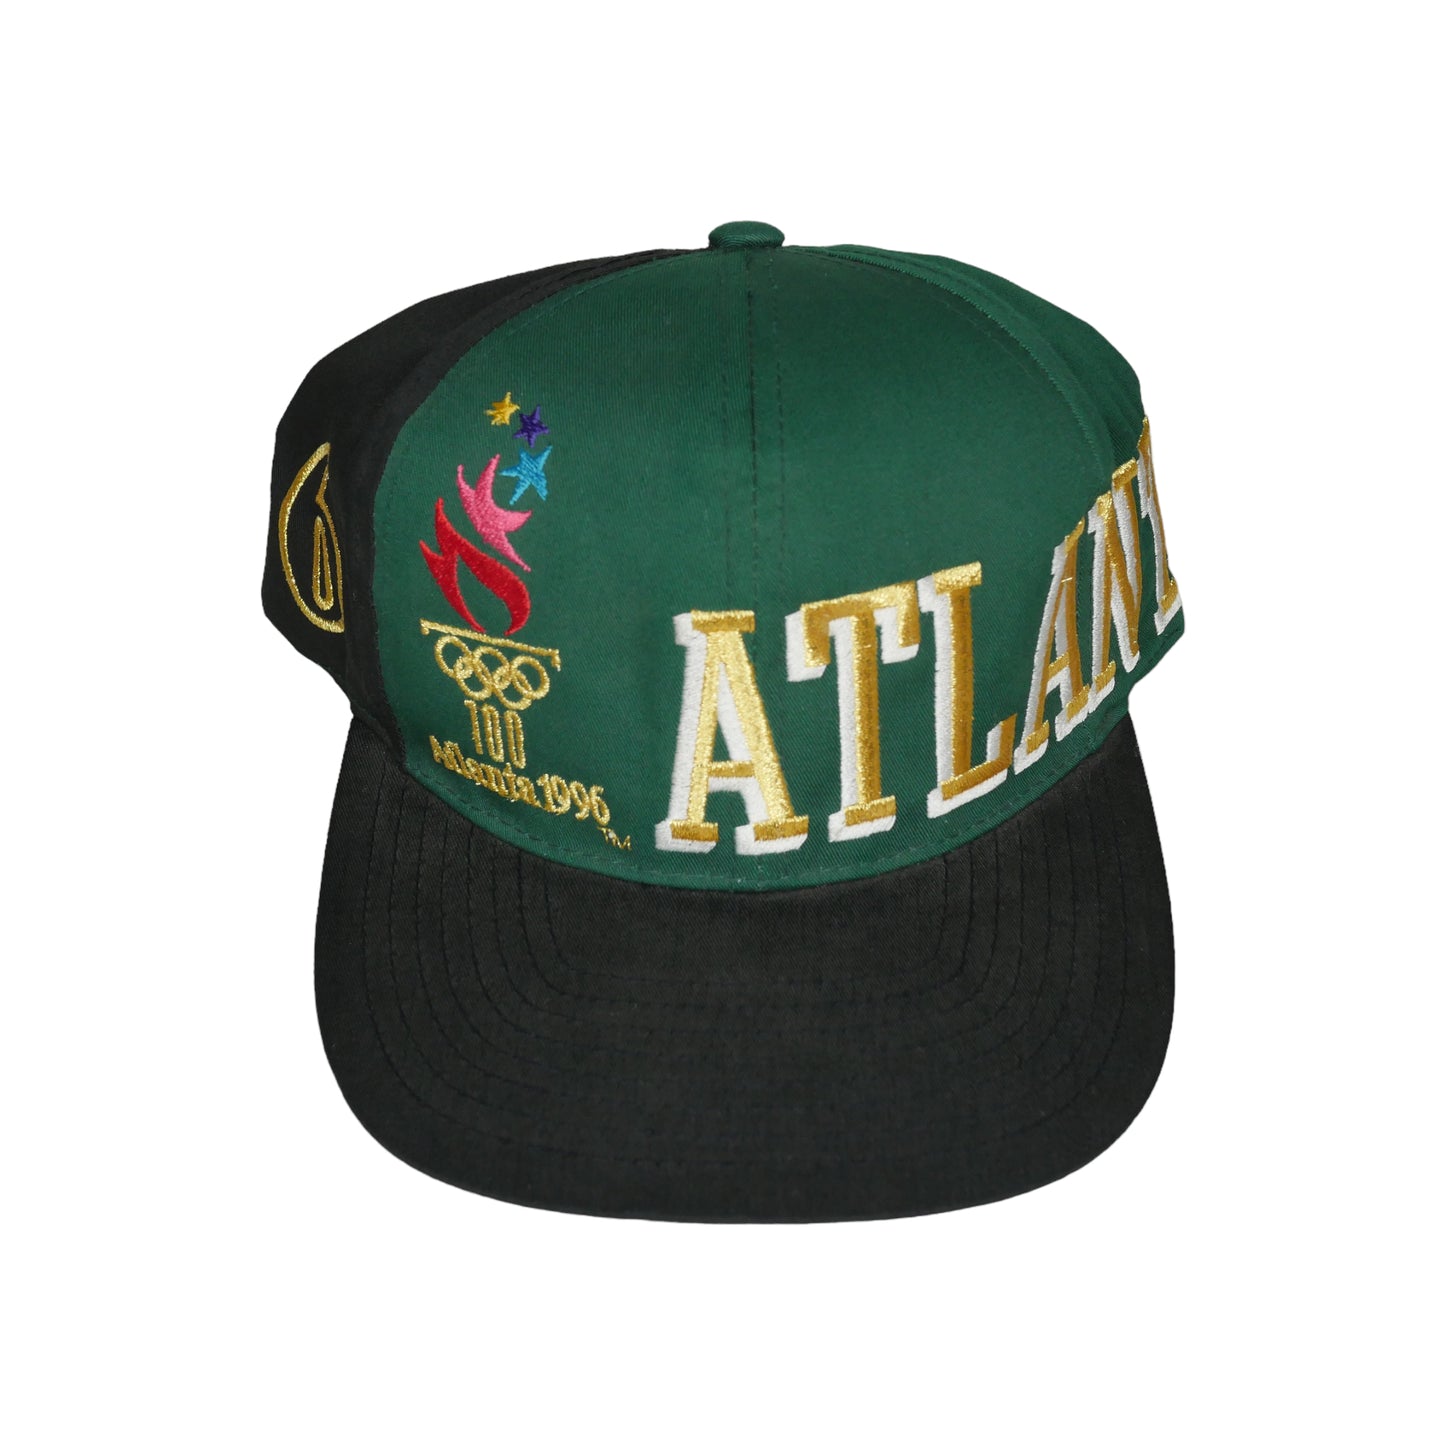 Atlanta 1996 Olympics Snapback Hat